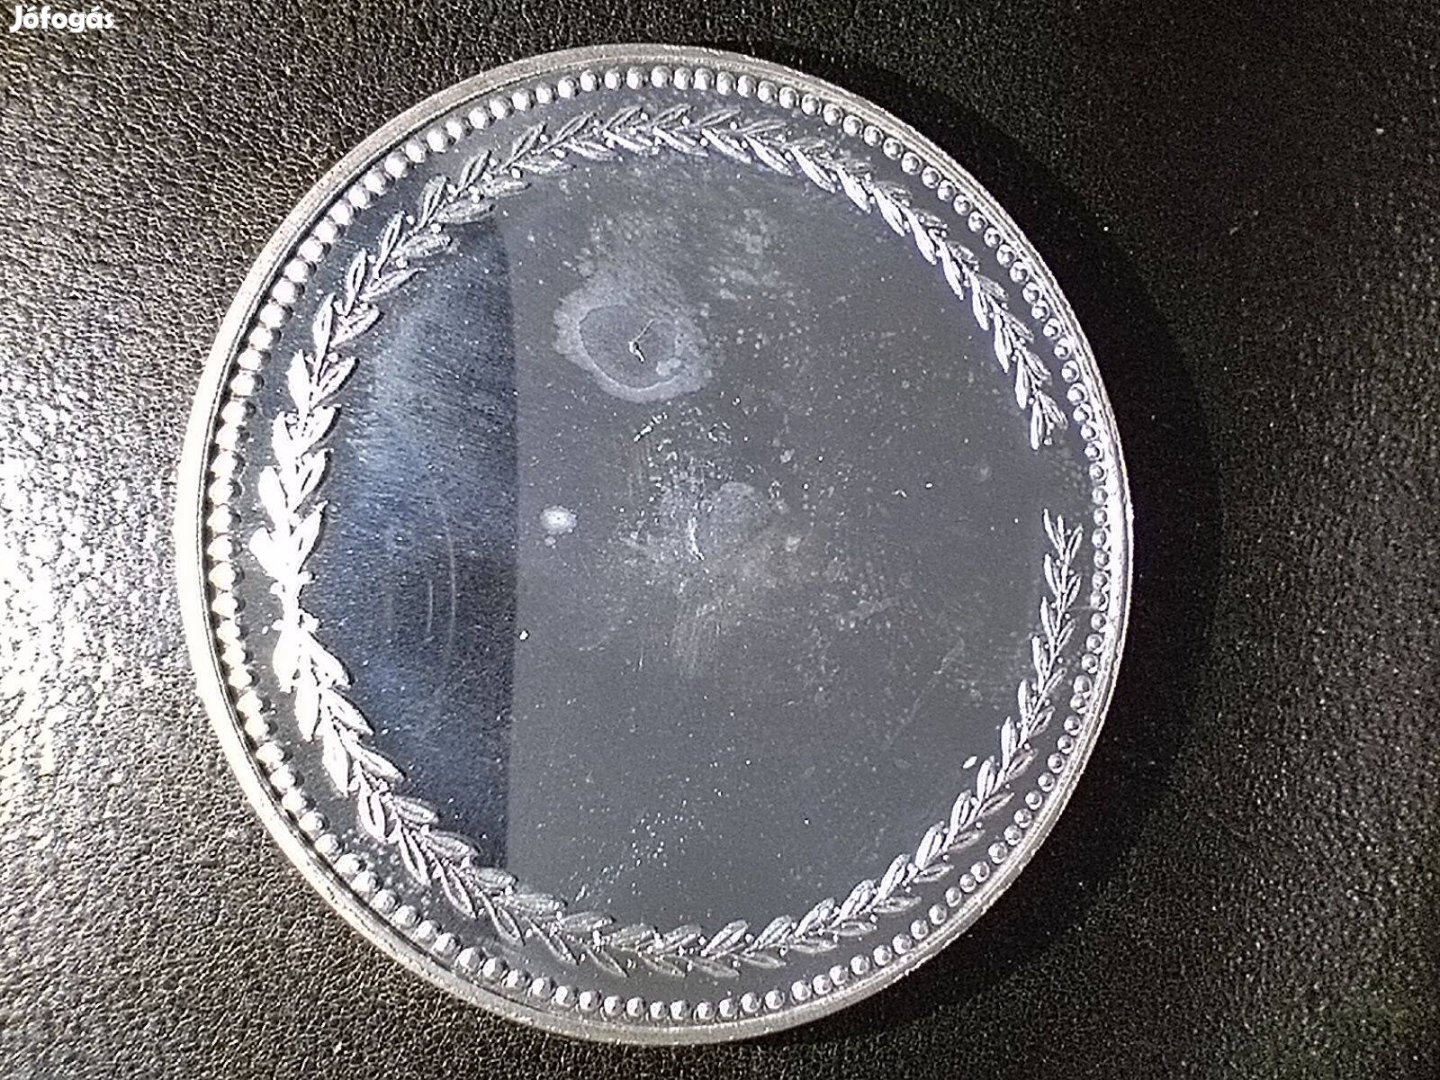 Magyar Mikrobiológiai Társaság ezüst érme 1950 - 2001